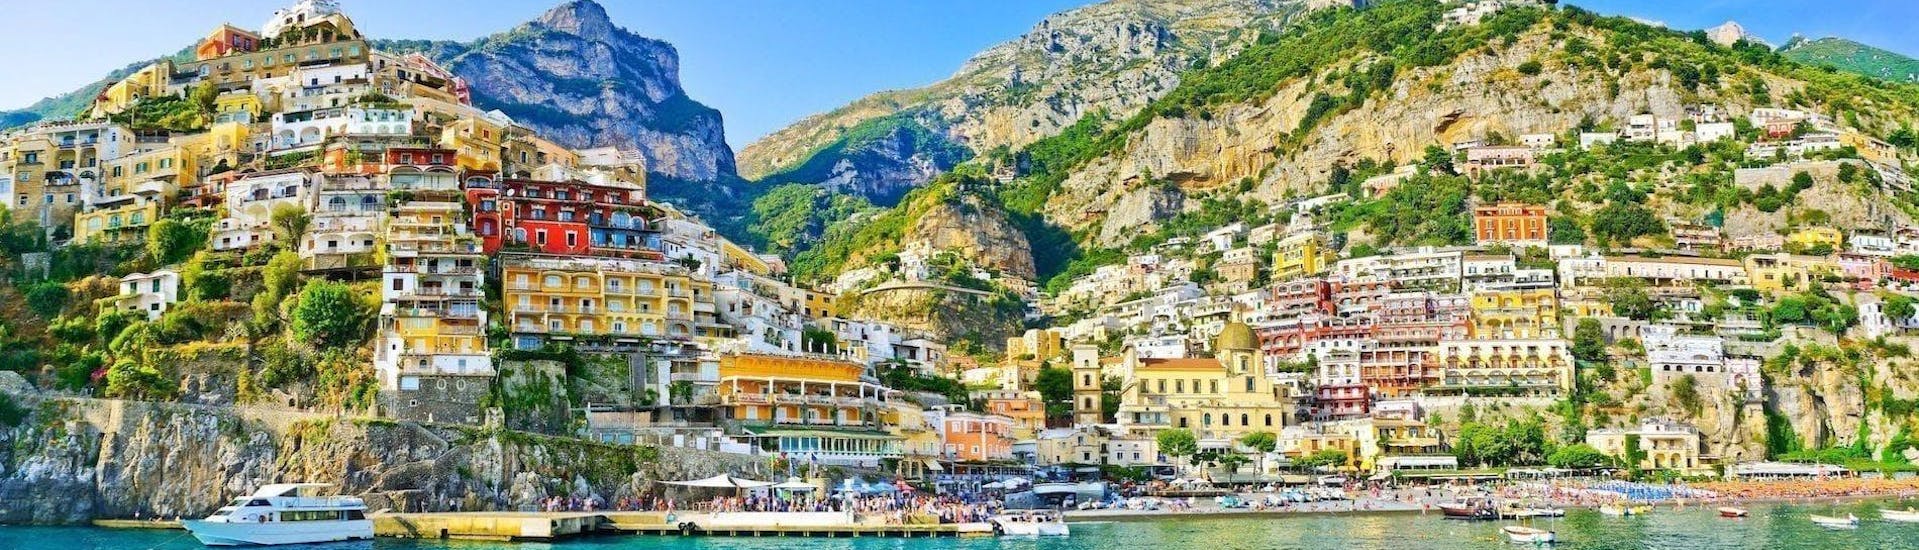 La vista de Amalfi desde el mar es uno de los aspectos más destacados de este Paseo Privado en Barco de Sorrento a Positano y Amalfi.